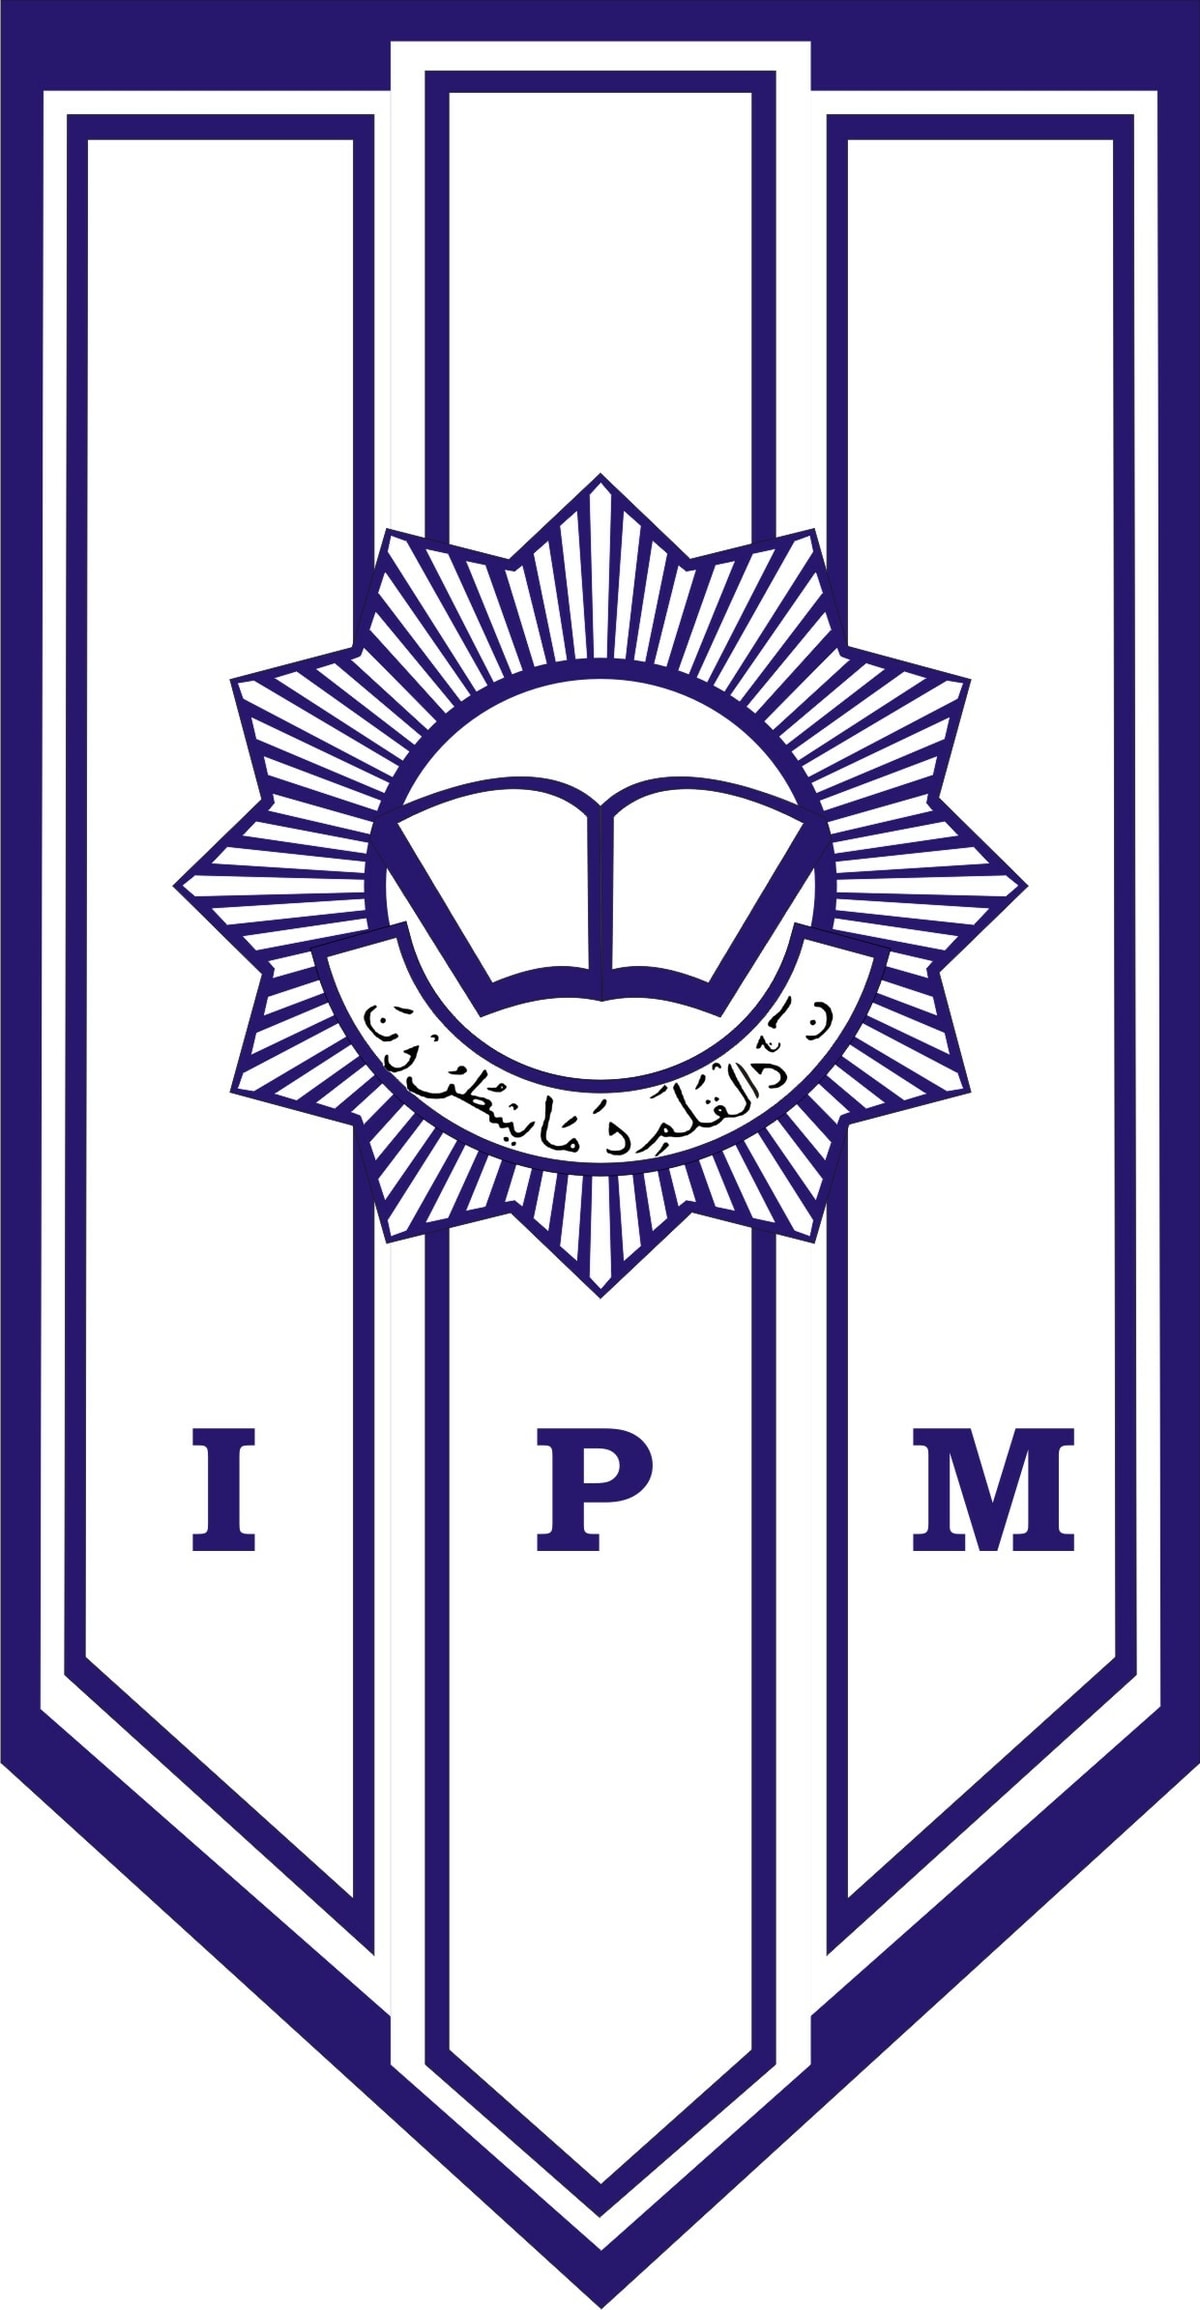 Lambang dan logo IPM (Ikatan Pelajar Muhammadiyah)